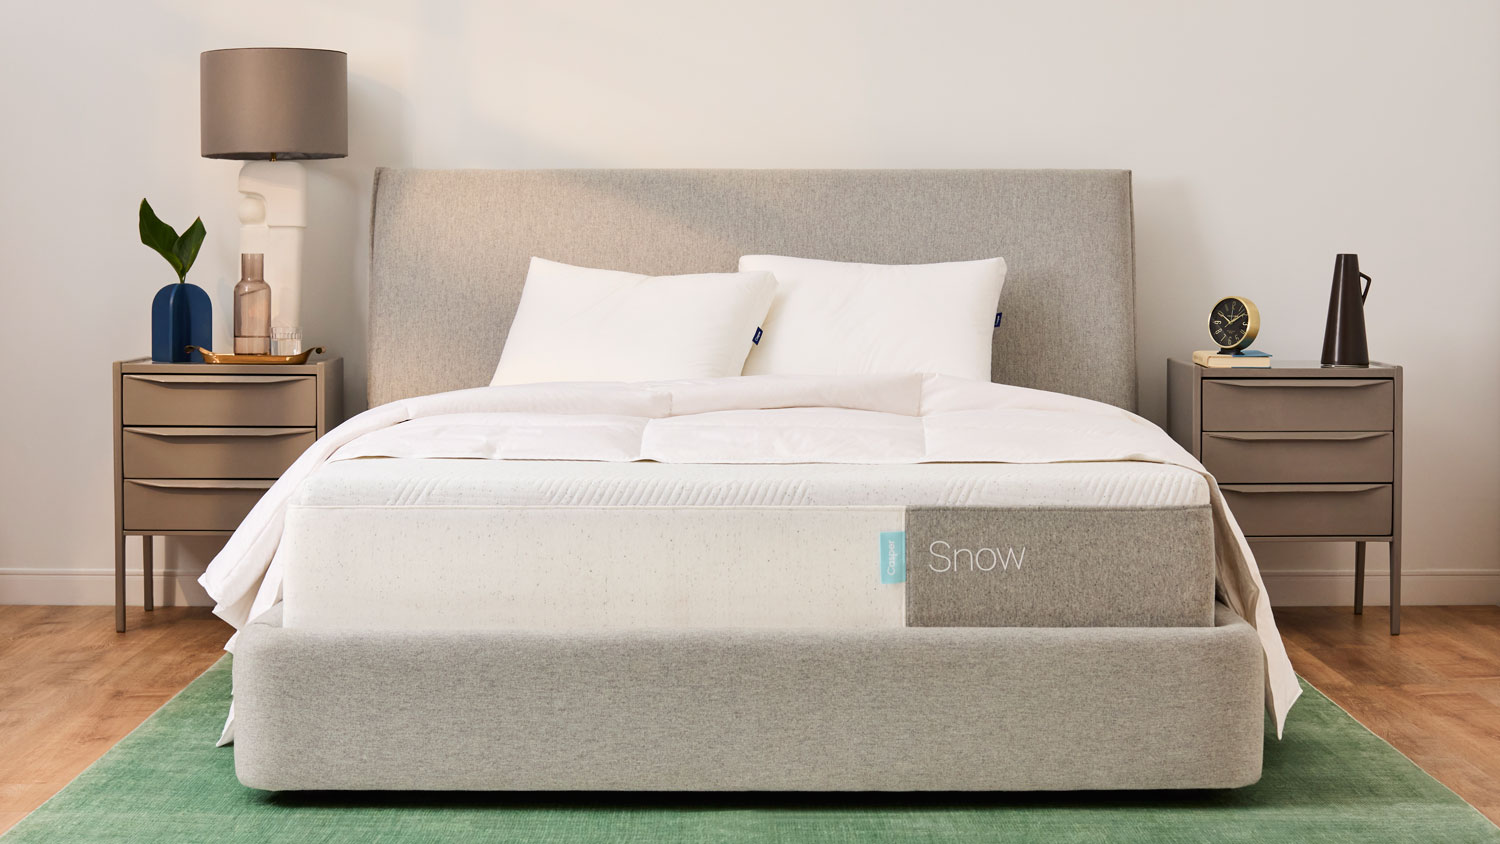 The Casper Snow mattress on a bed